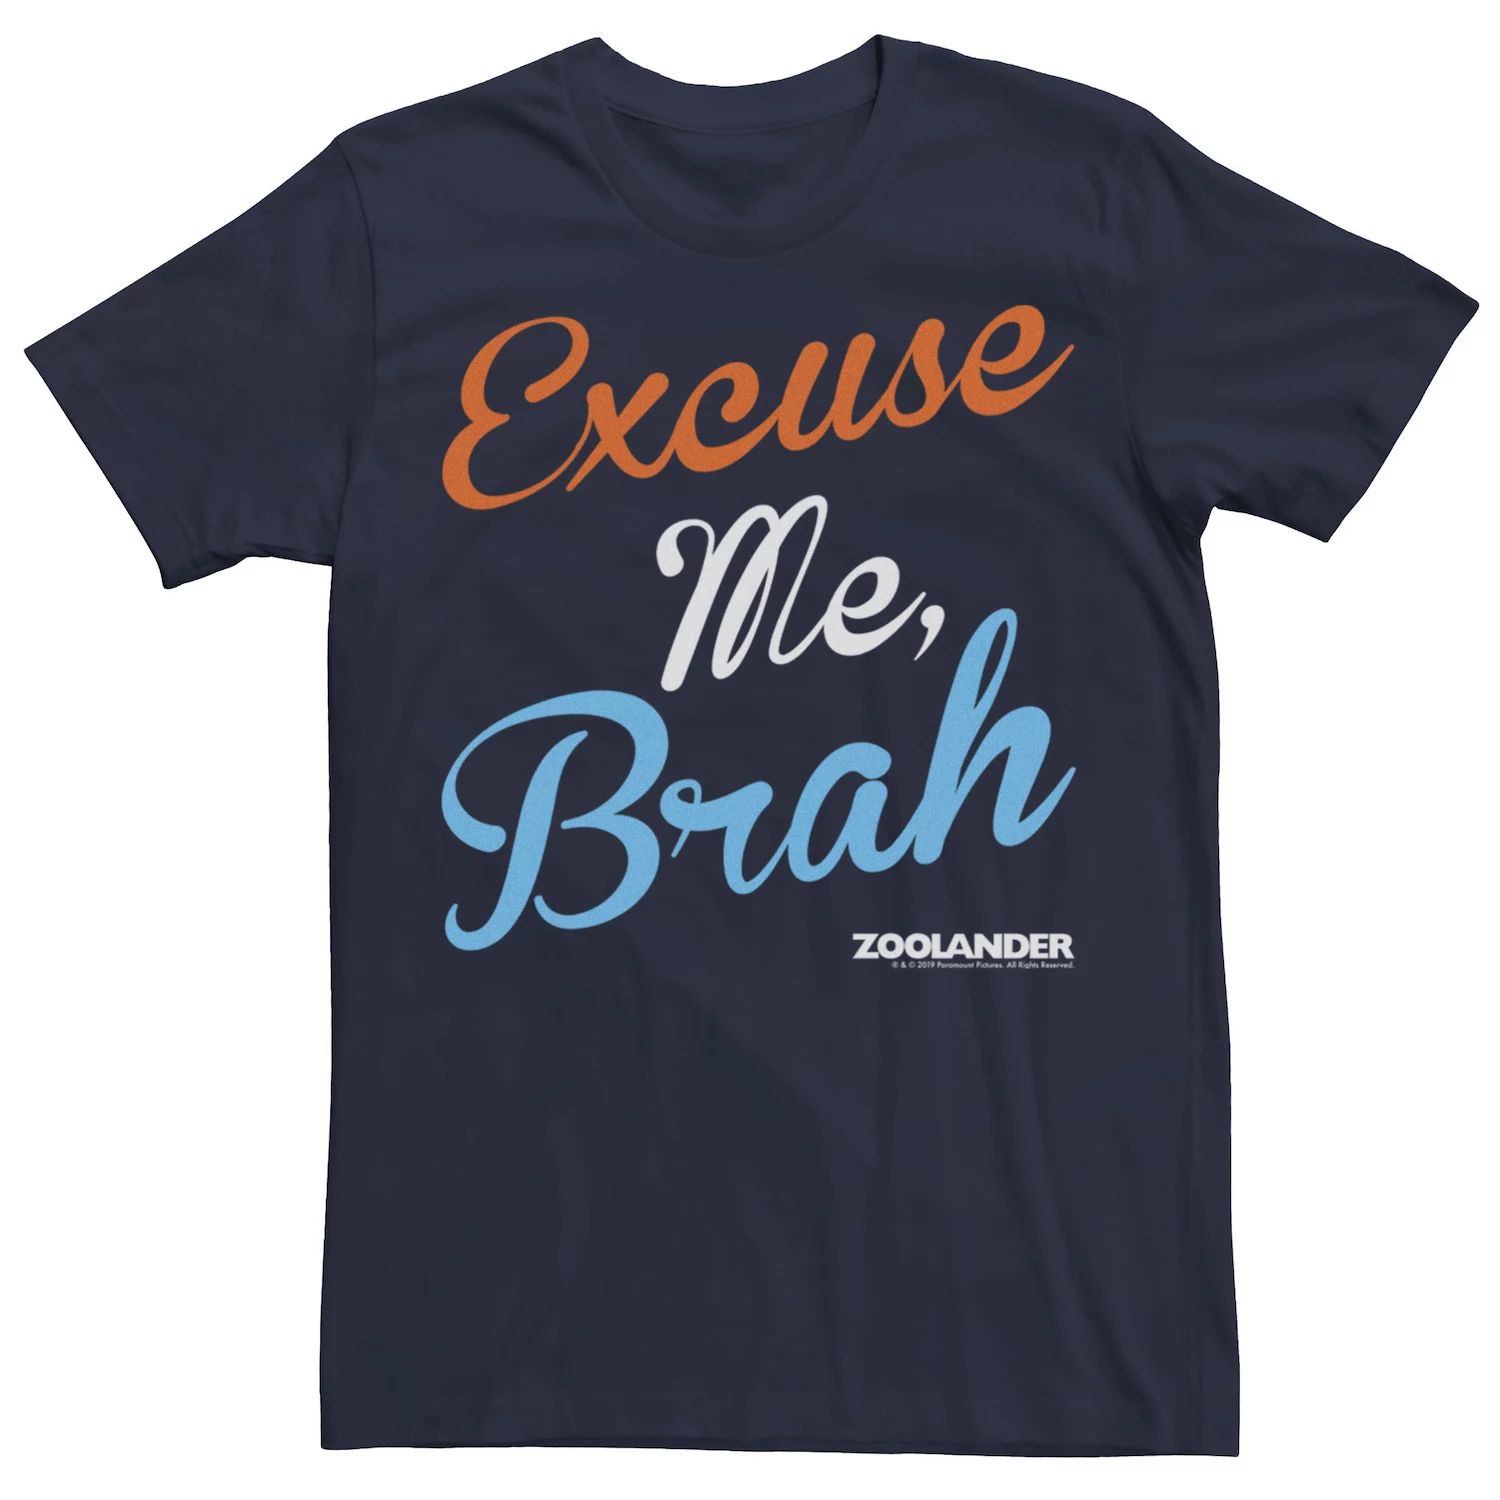 Мужская футболка Zoolander Excuse Me Brah Licensed Character